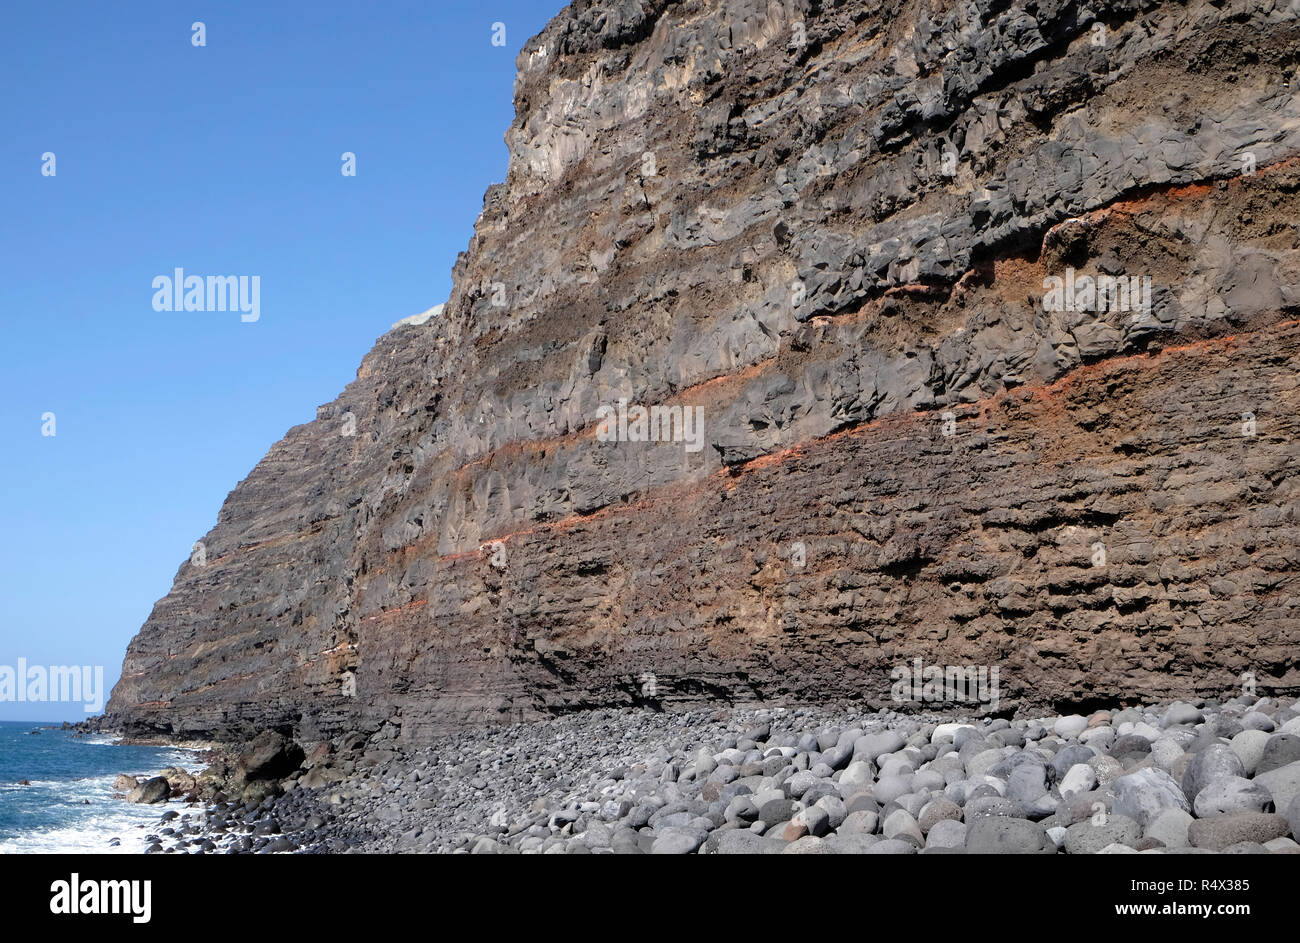 Le striature nelle scogliere di Tazacorte, mostrante la formazione vulcanica dell'isola di La Palma, Canarie Foto Stock